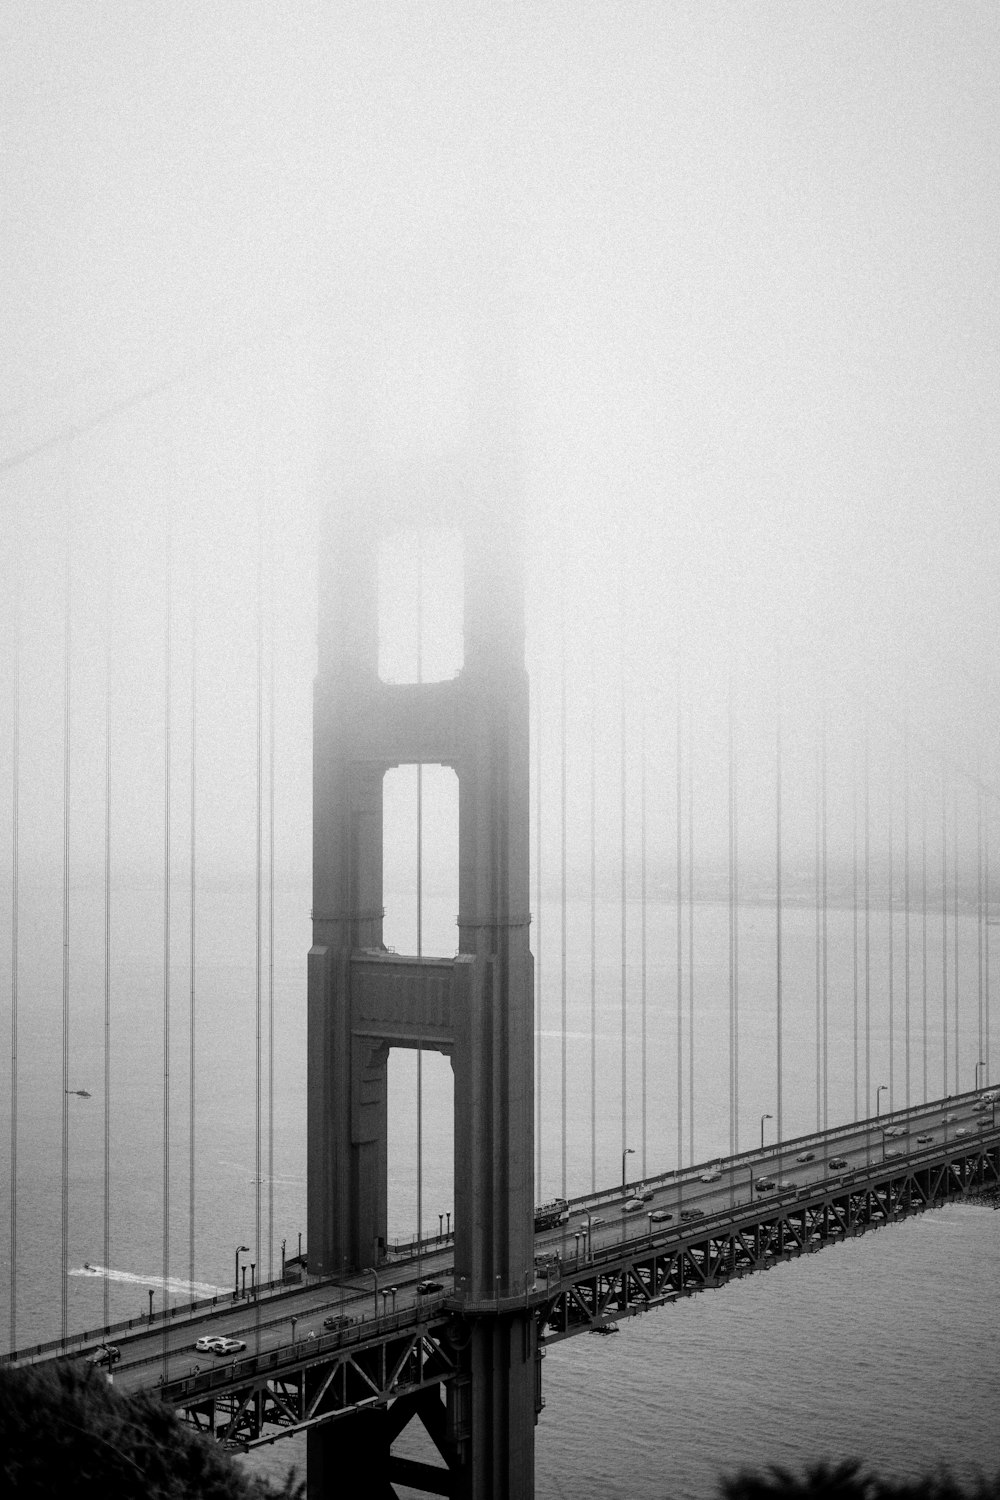 Ein nebliger Blick auf die Golden Gate Bridge